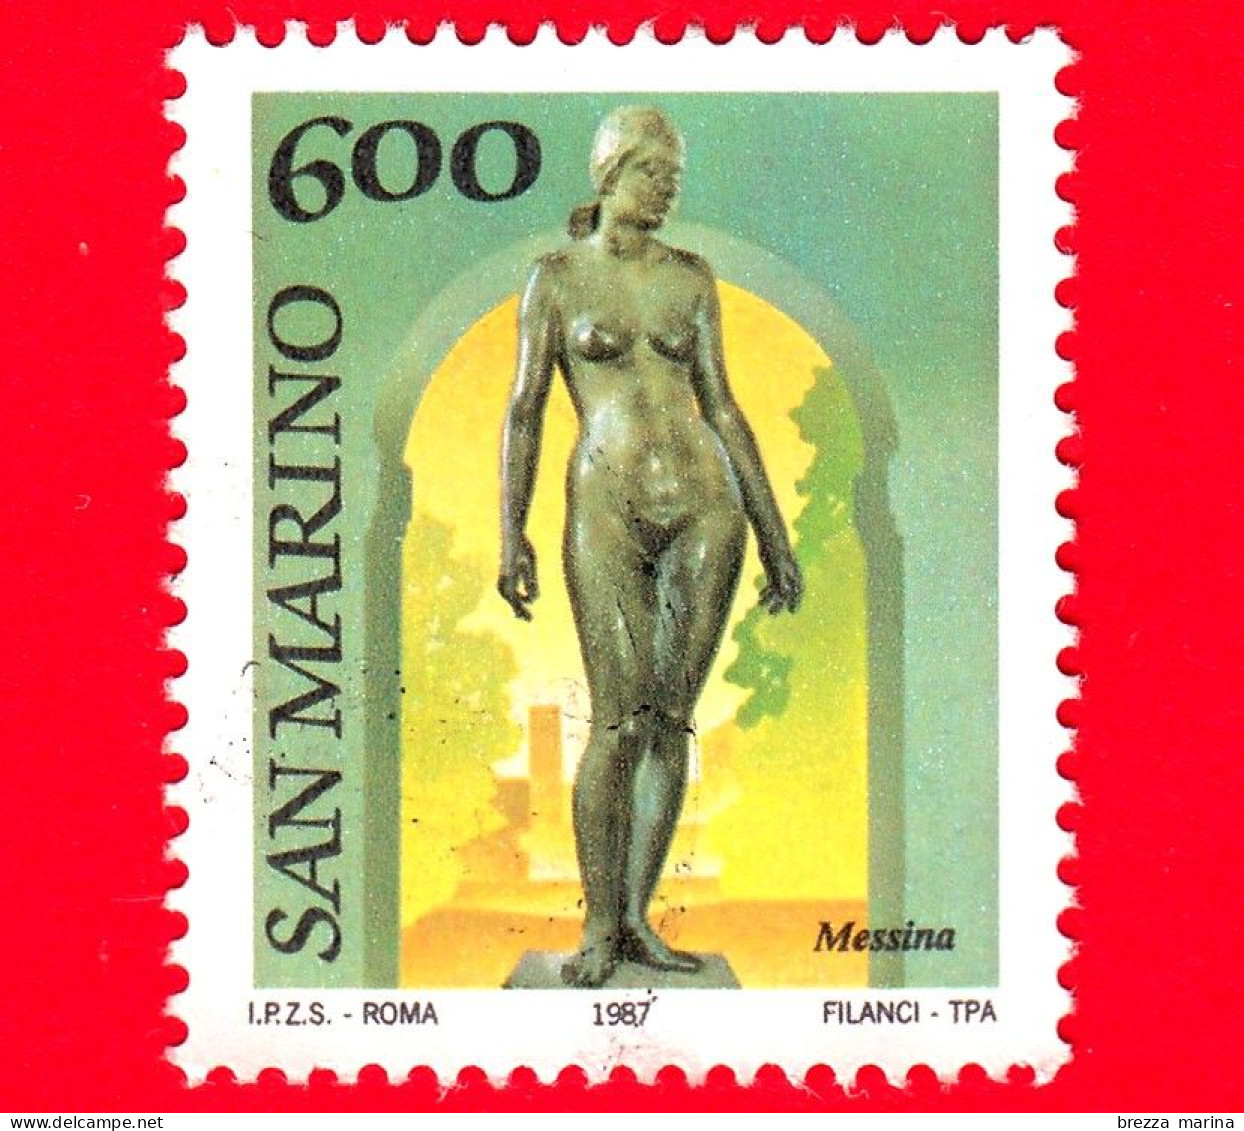 SAN MARINO - Usato - 1987 - Museo All'aperto - Scultura Di Messina - Nudo - 600 - Used Stamps